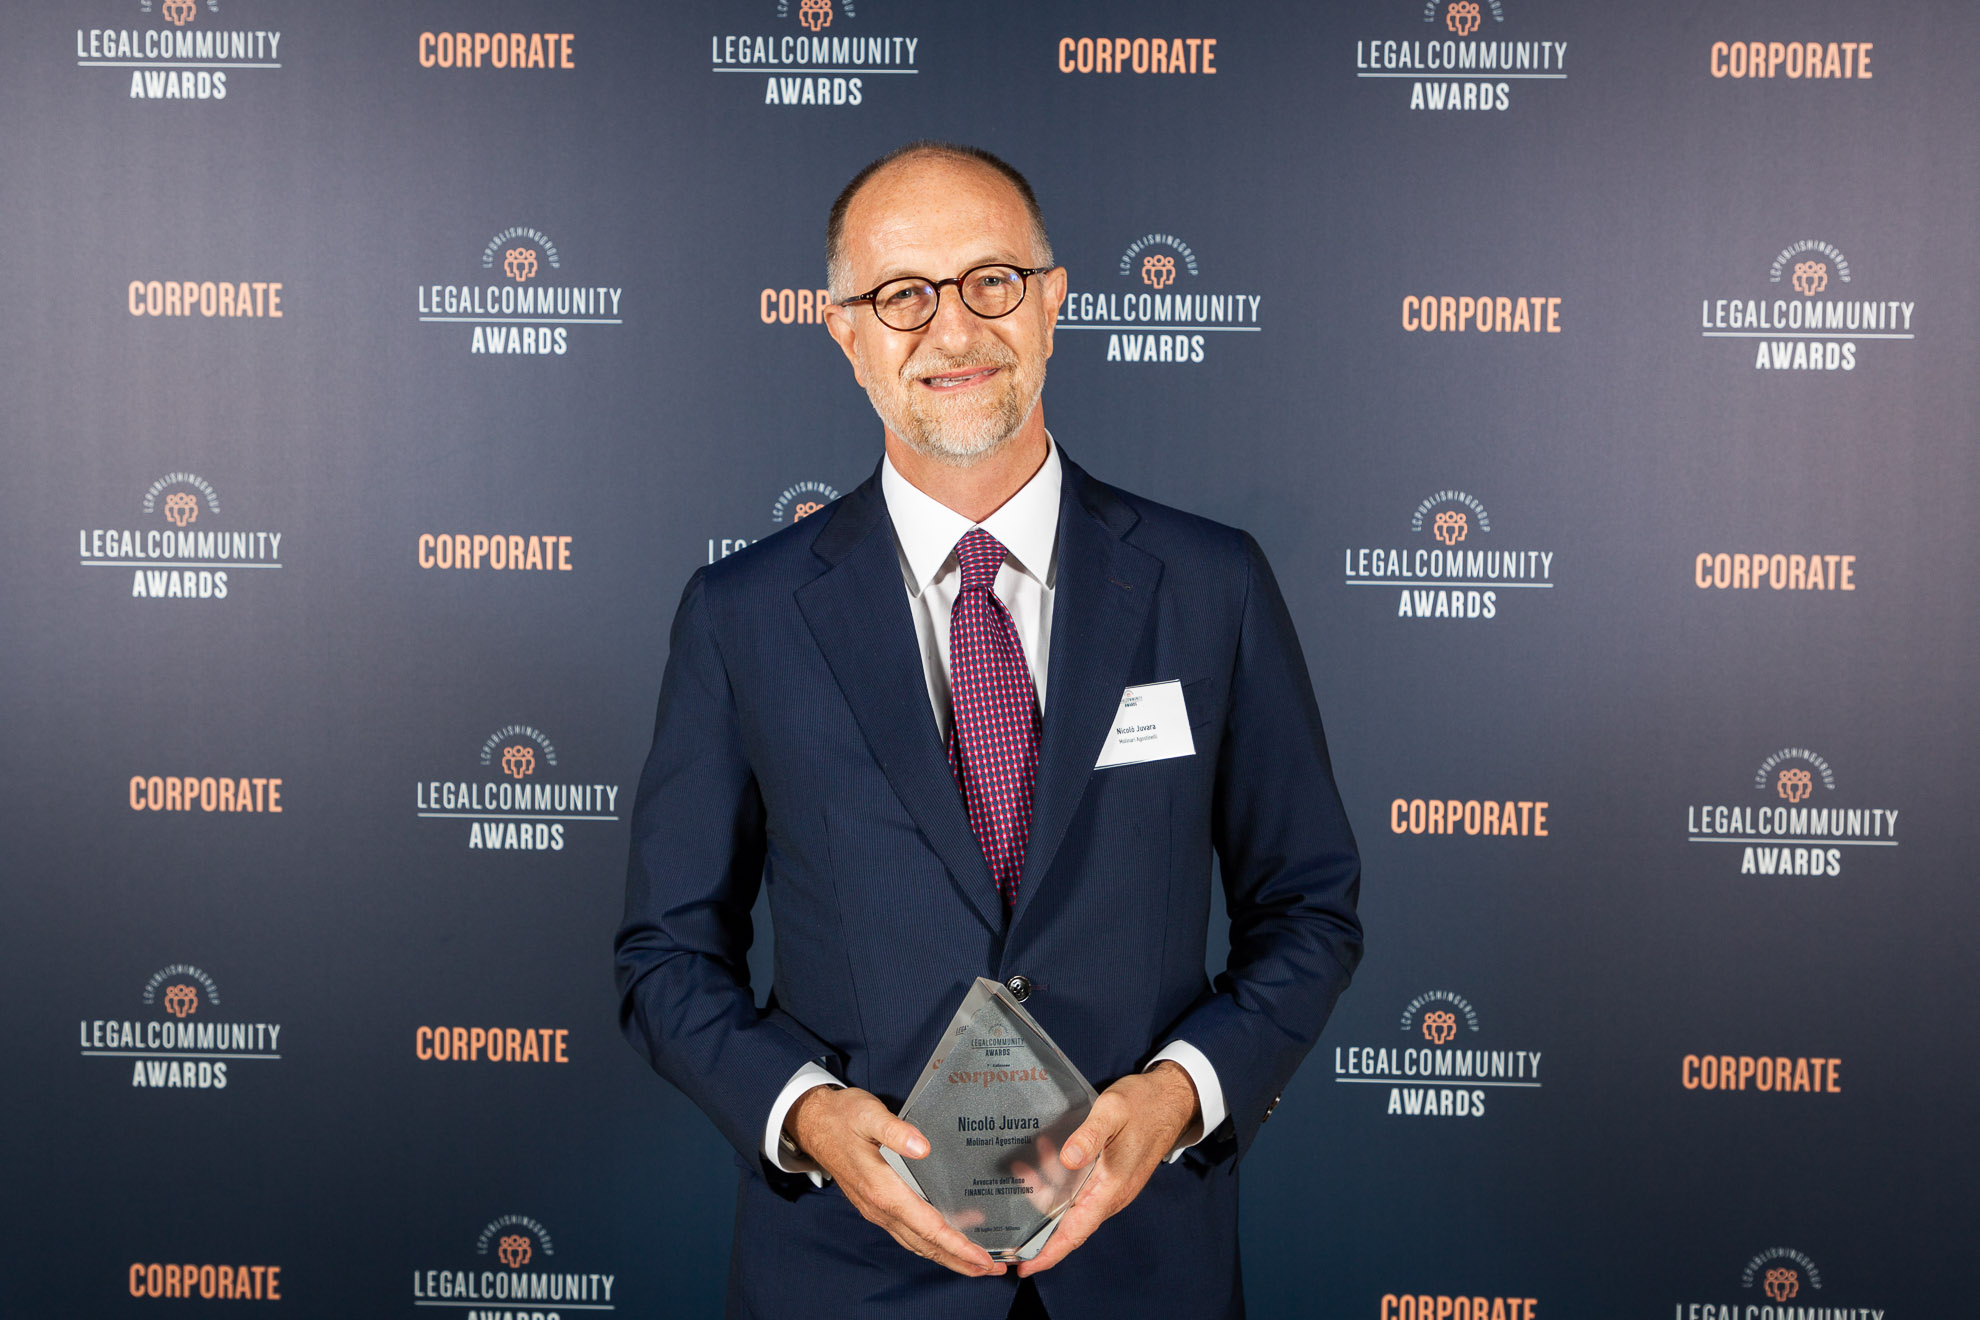 Nicolò Juvara vince il premio Avvocato dell’Anno Financial Institutions ai Legalcommunity Corporate Awards